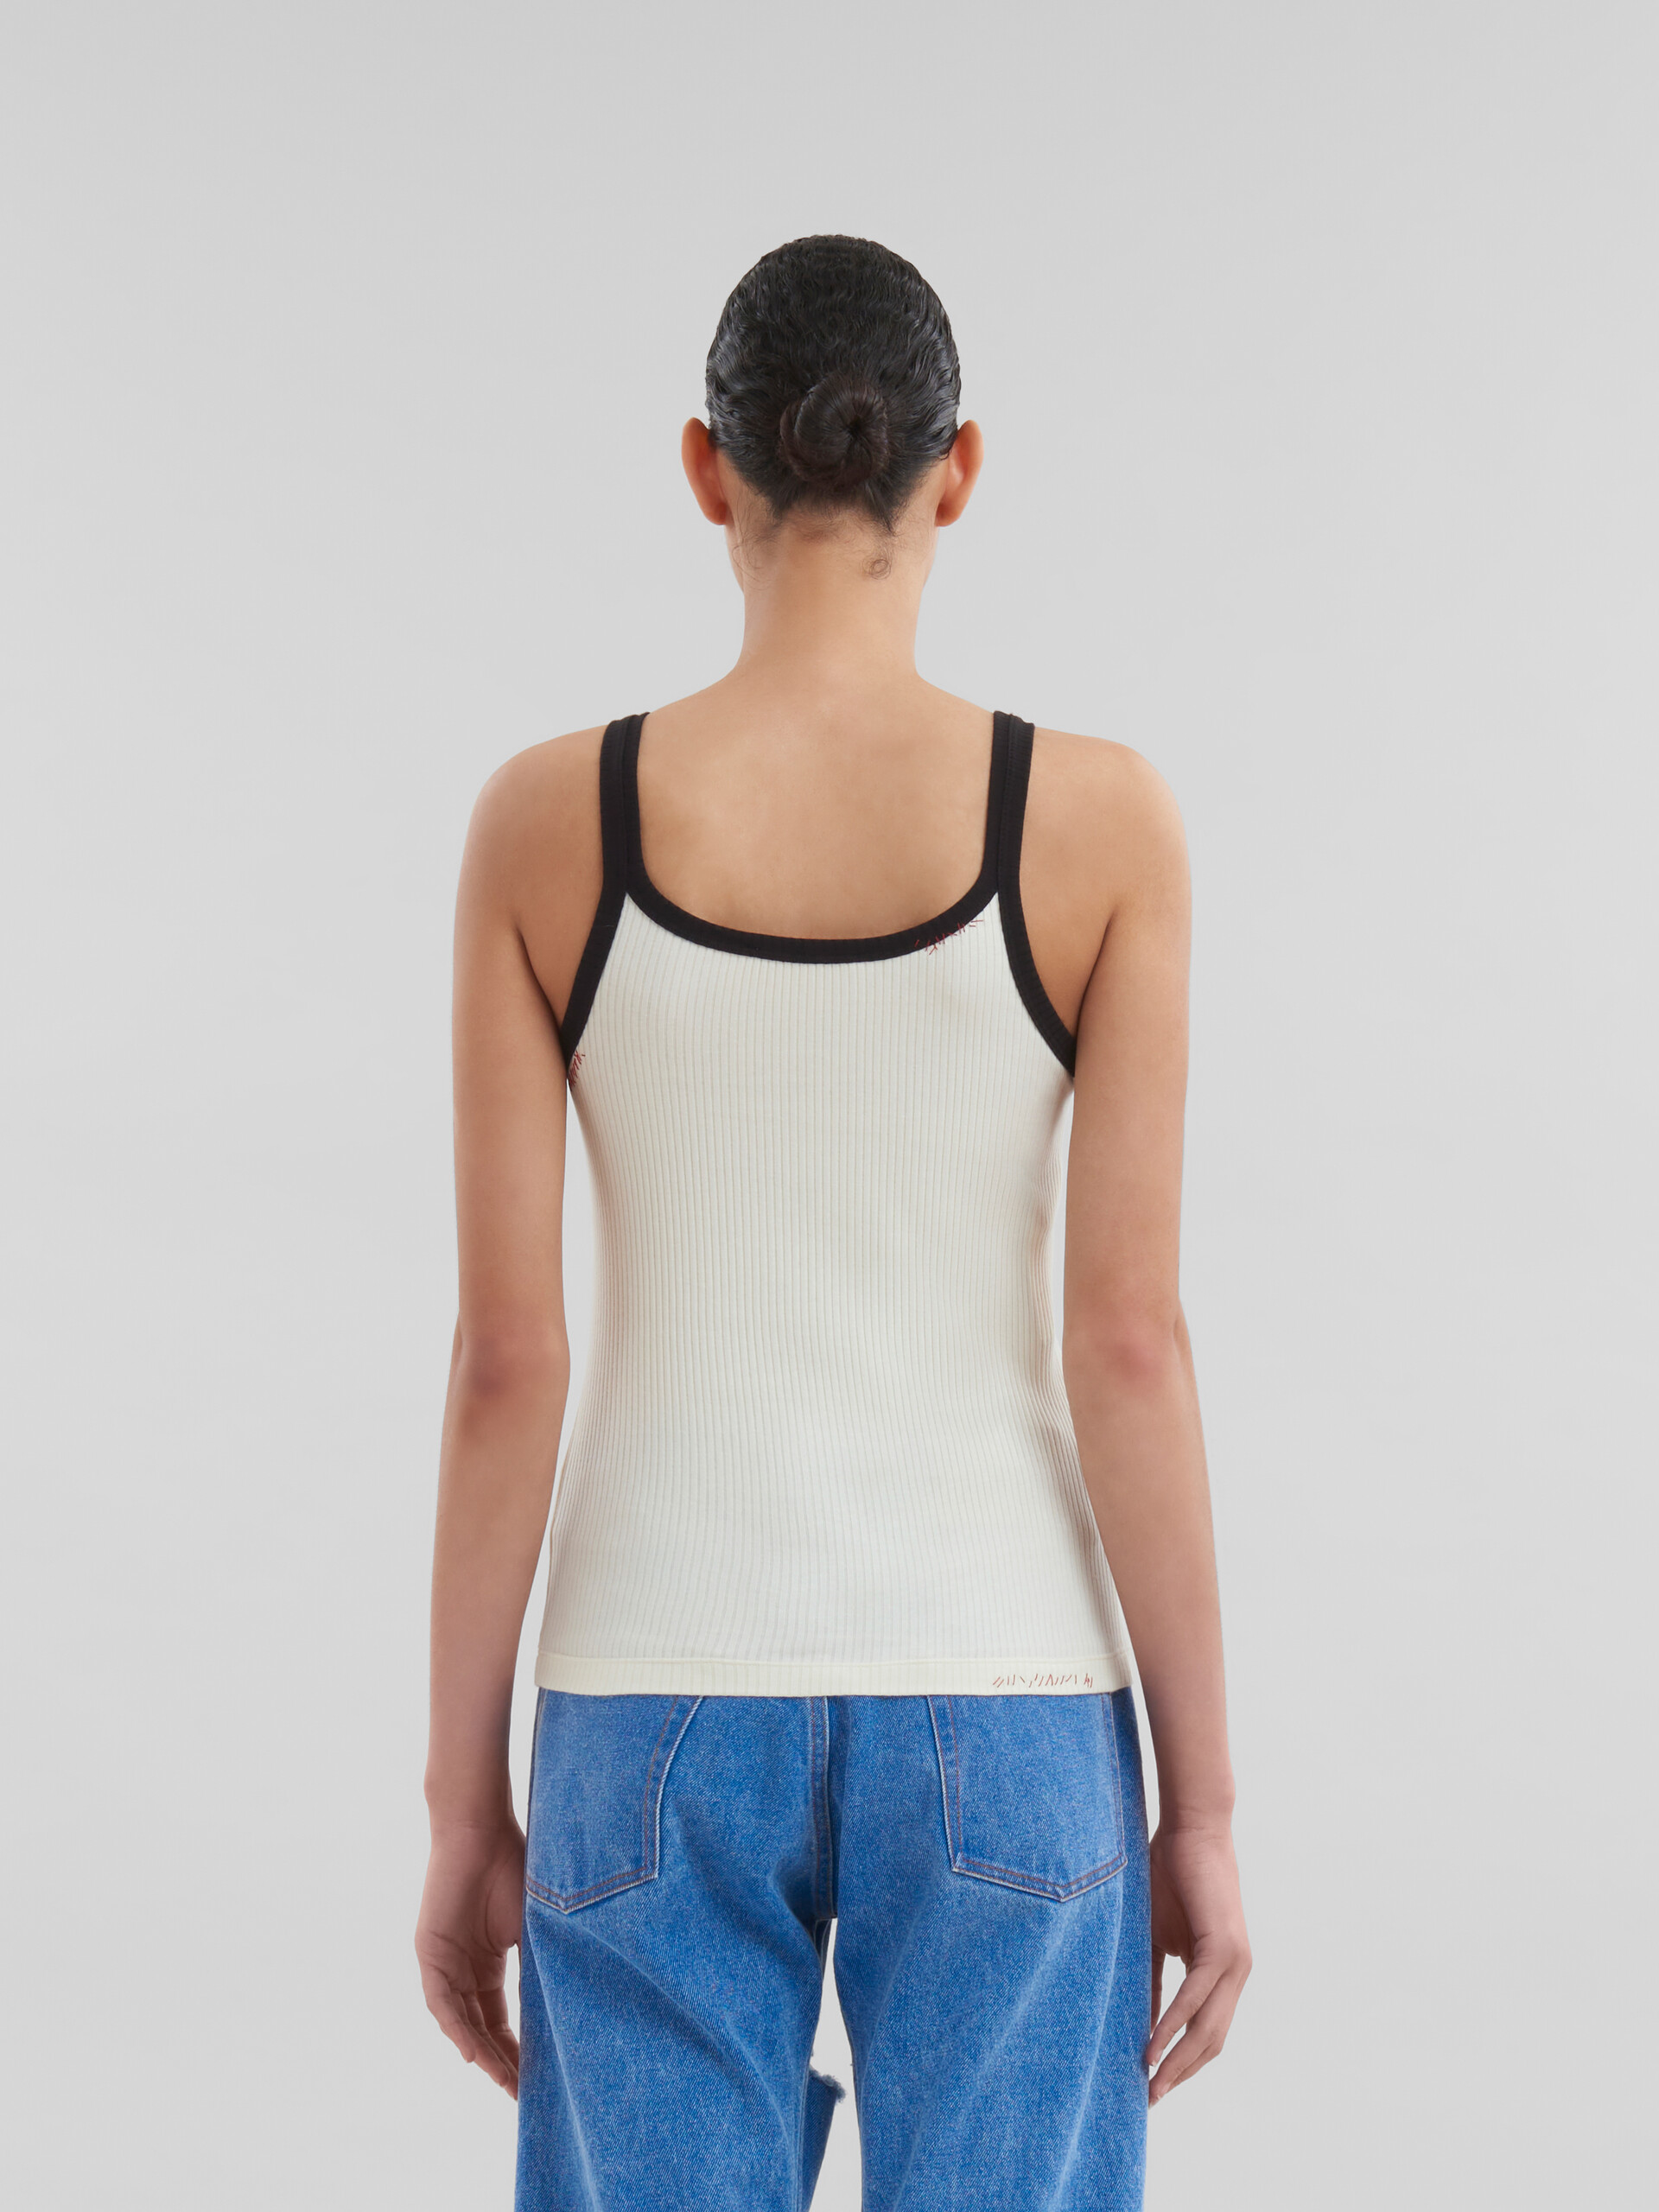 Camiseta de tirantes blanca de algodón acanalado con remiendo Marni - Camisetas - Image 3